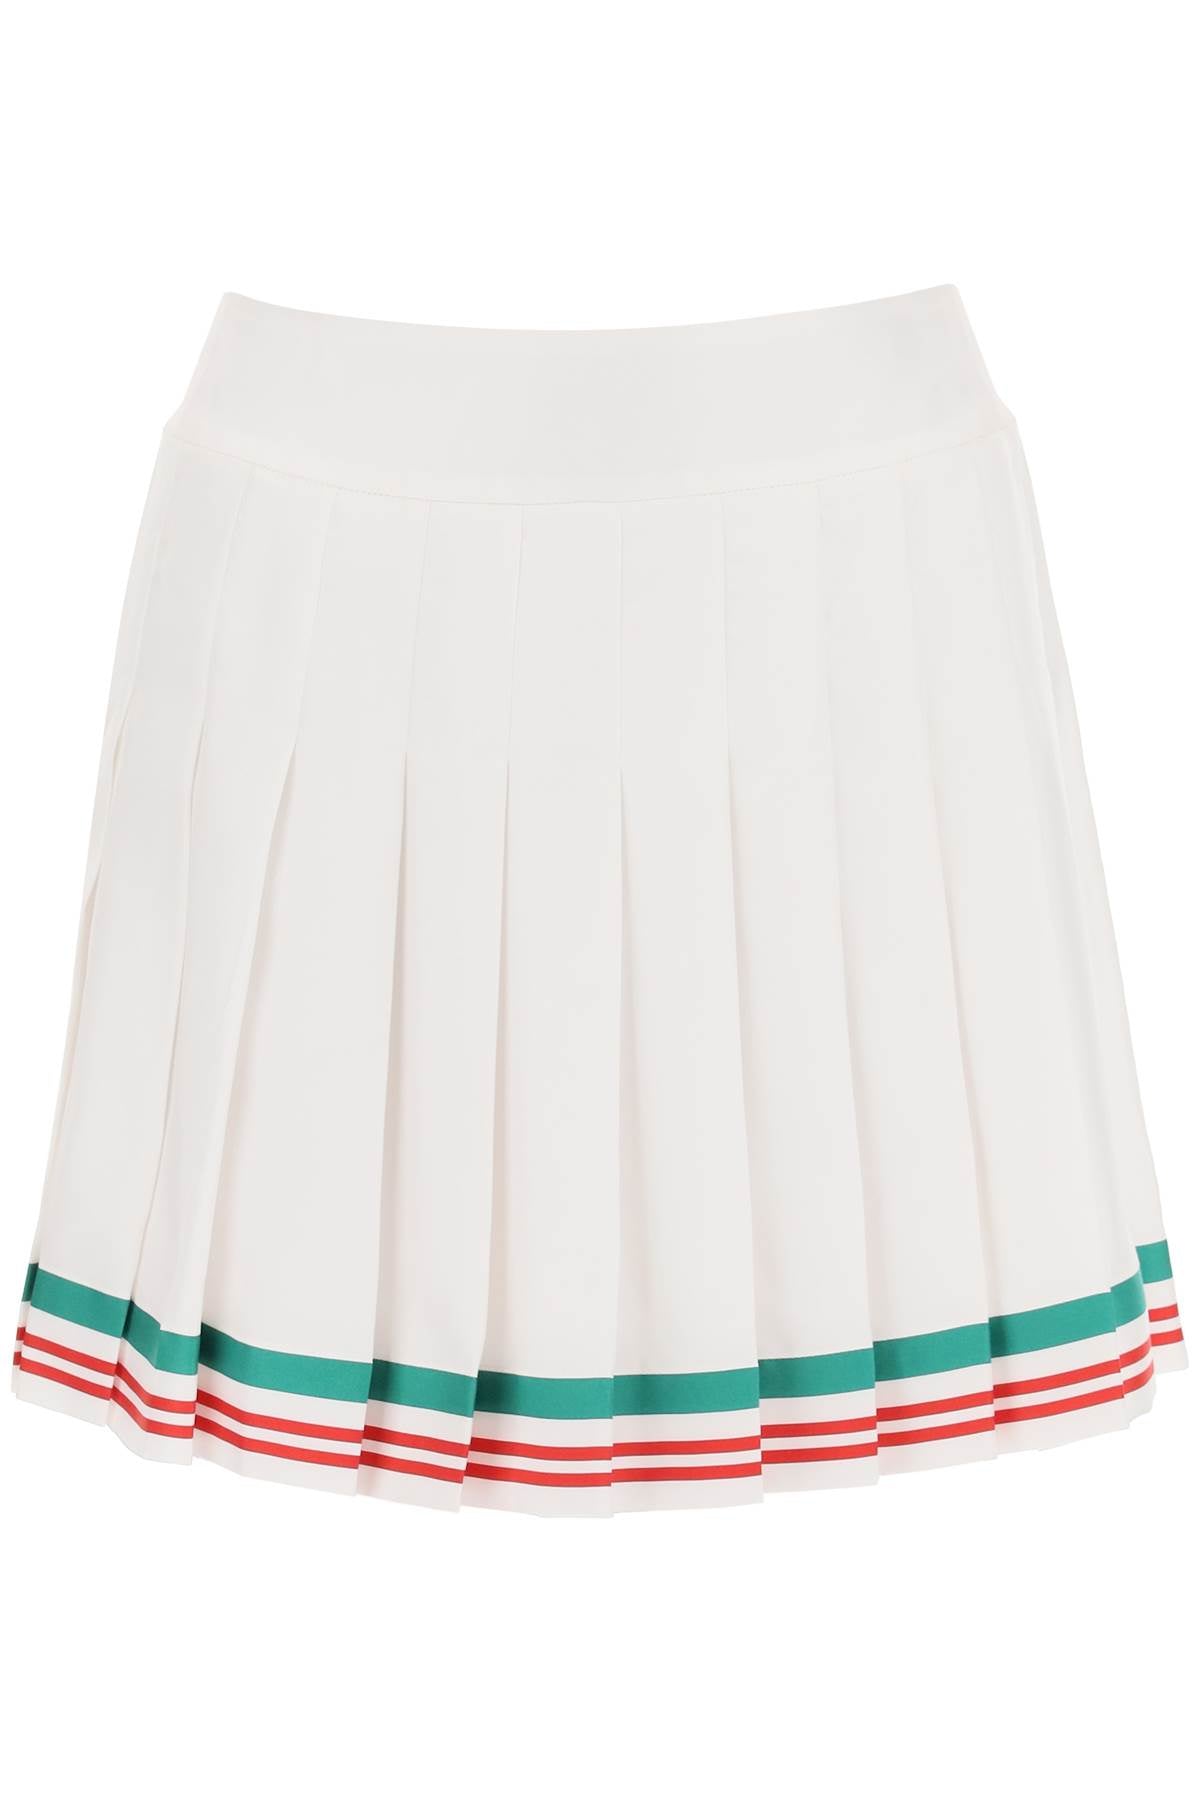 Váy Tennis Mini Trắng cho Nữ - Hạt Silk Pleated với Viền Sọc